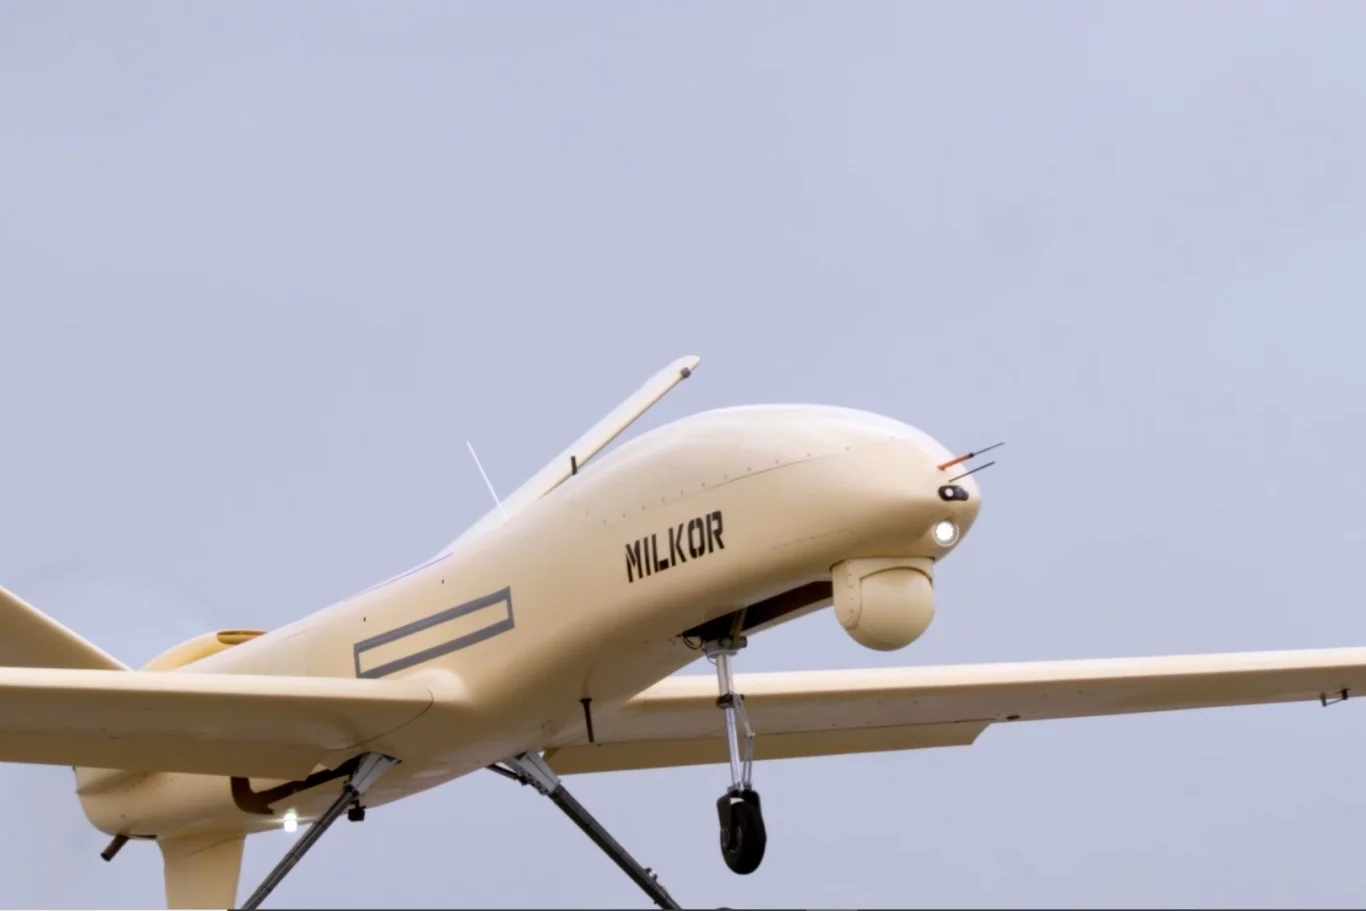 طائرة ميلكور بدون طيار 380 - ثورة في العمليات البحرية المدنية..فيديو